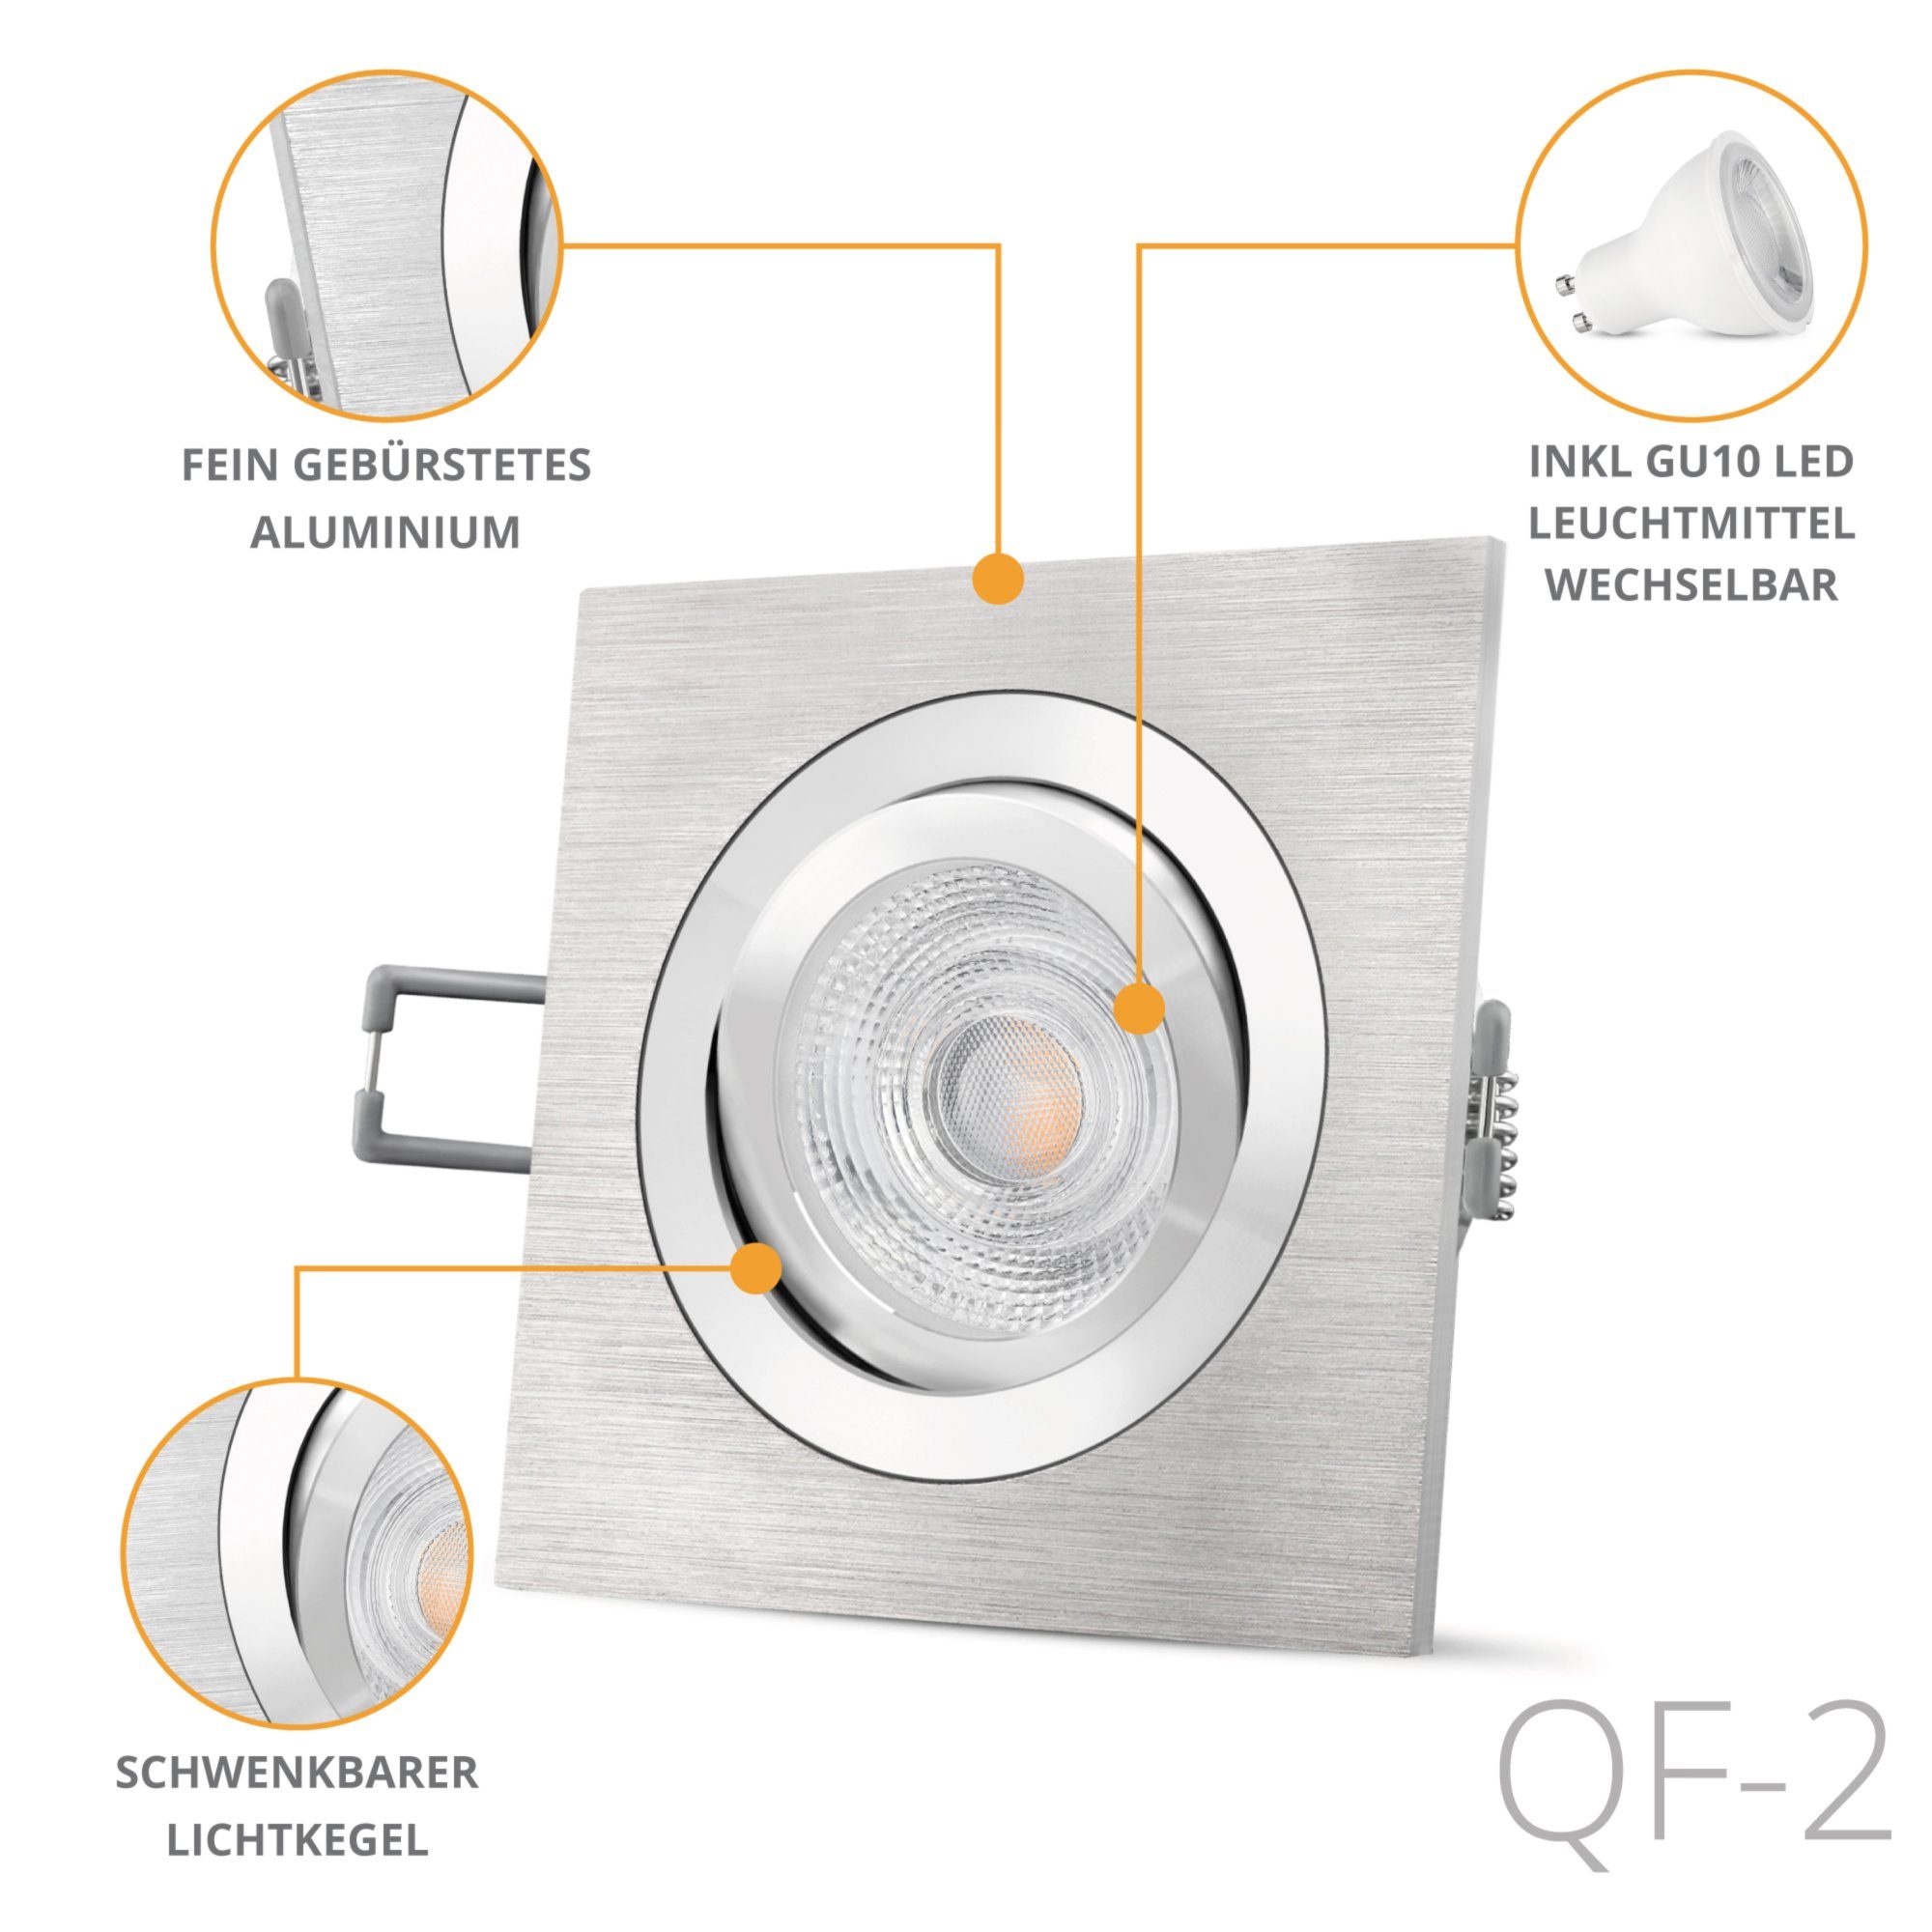 SSC-LUXon LED Einbaustrahler QF-2 LED schwenkbar Einbauleuchte GU10, mit Warmweiß Alu eckig in gebuerstet